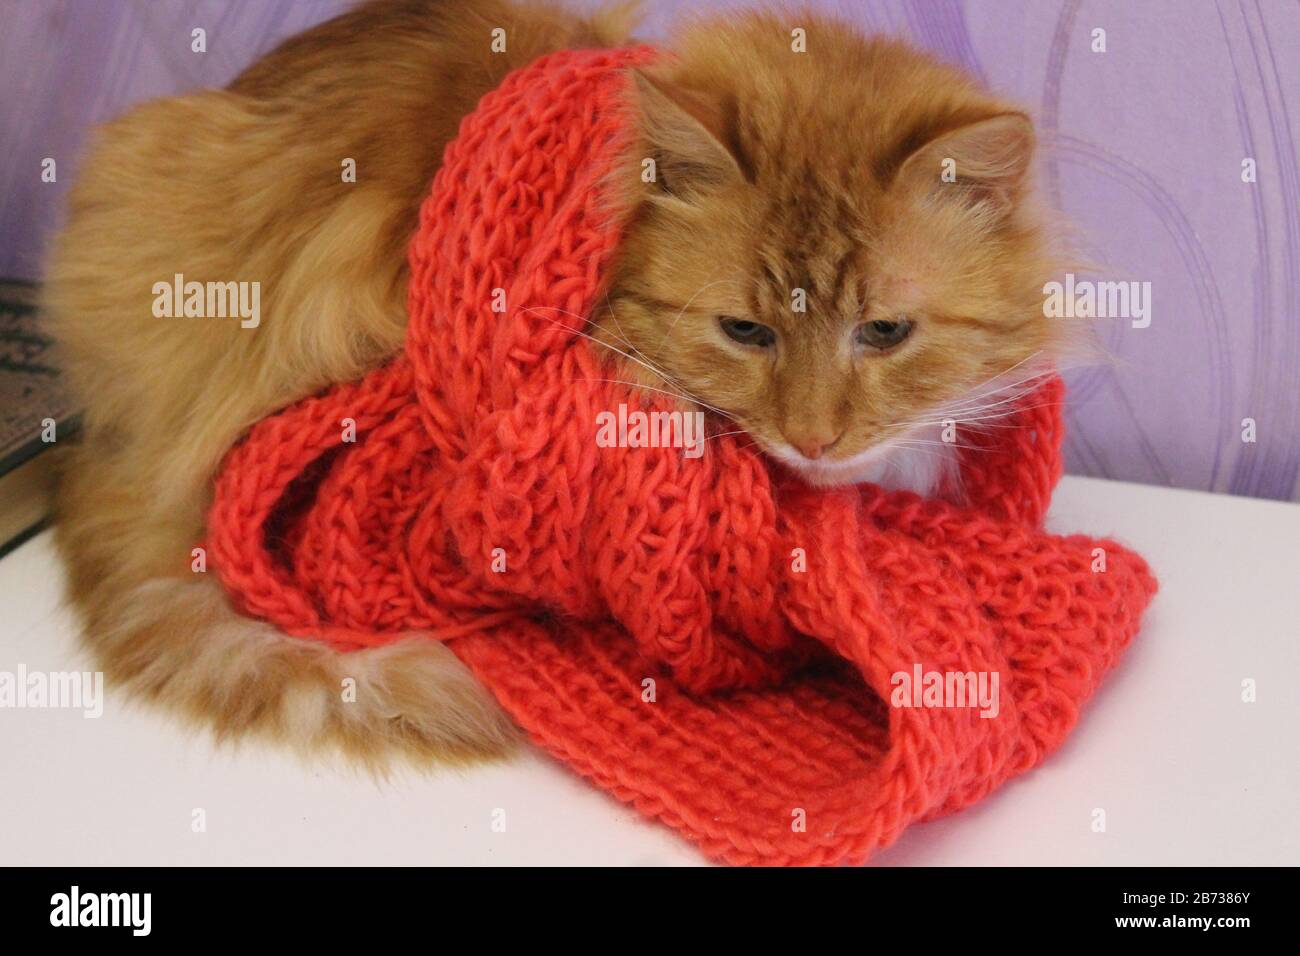 magnifique chat de couleur orange vif dans un foulard en bois rouge attrapez la grippe Banque D'Images